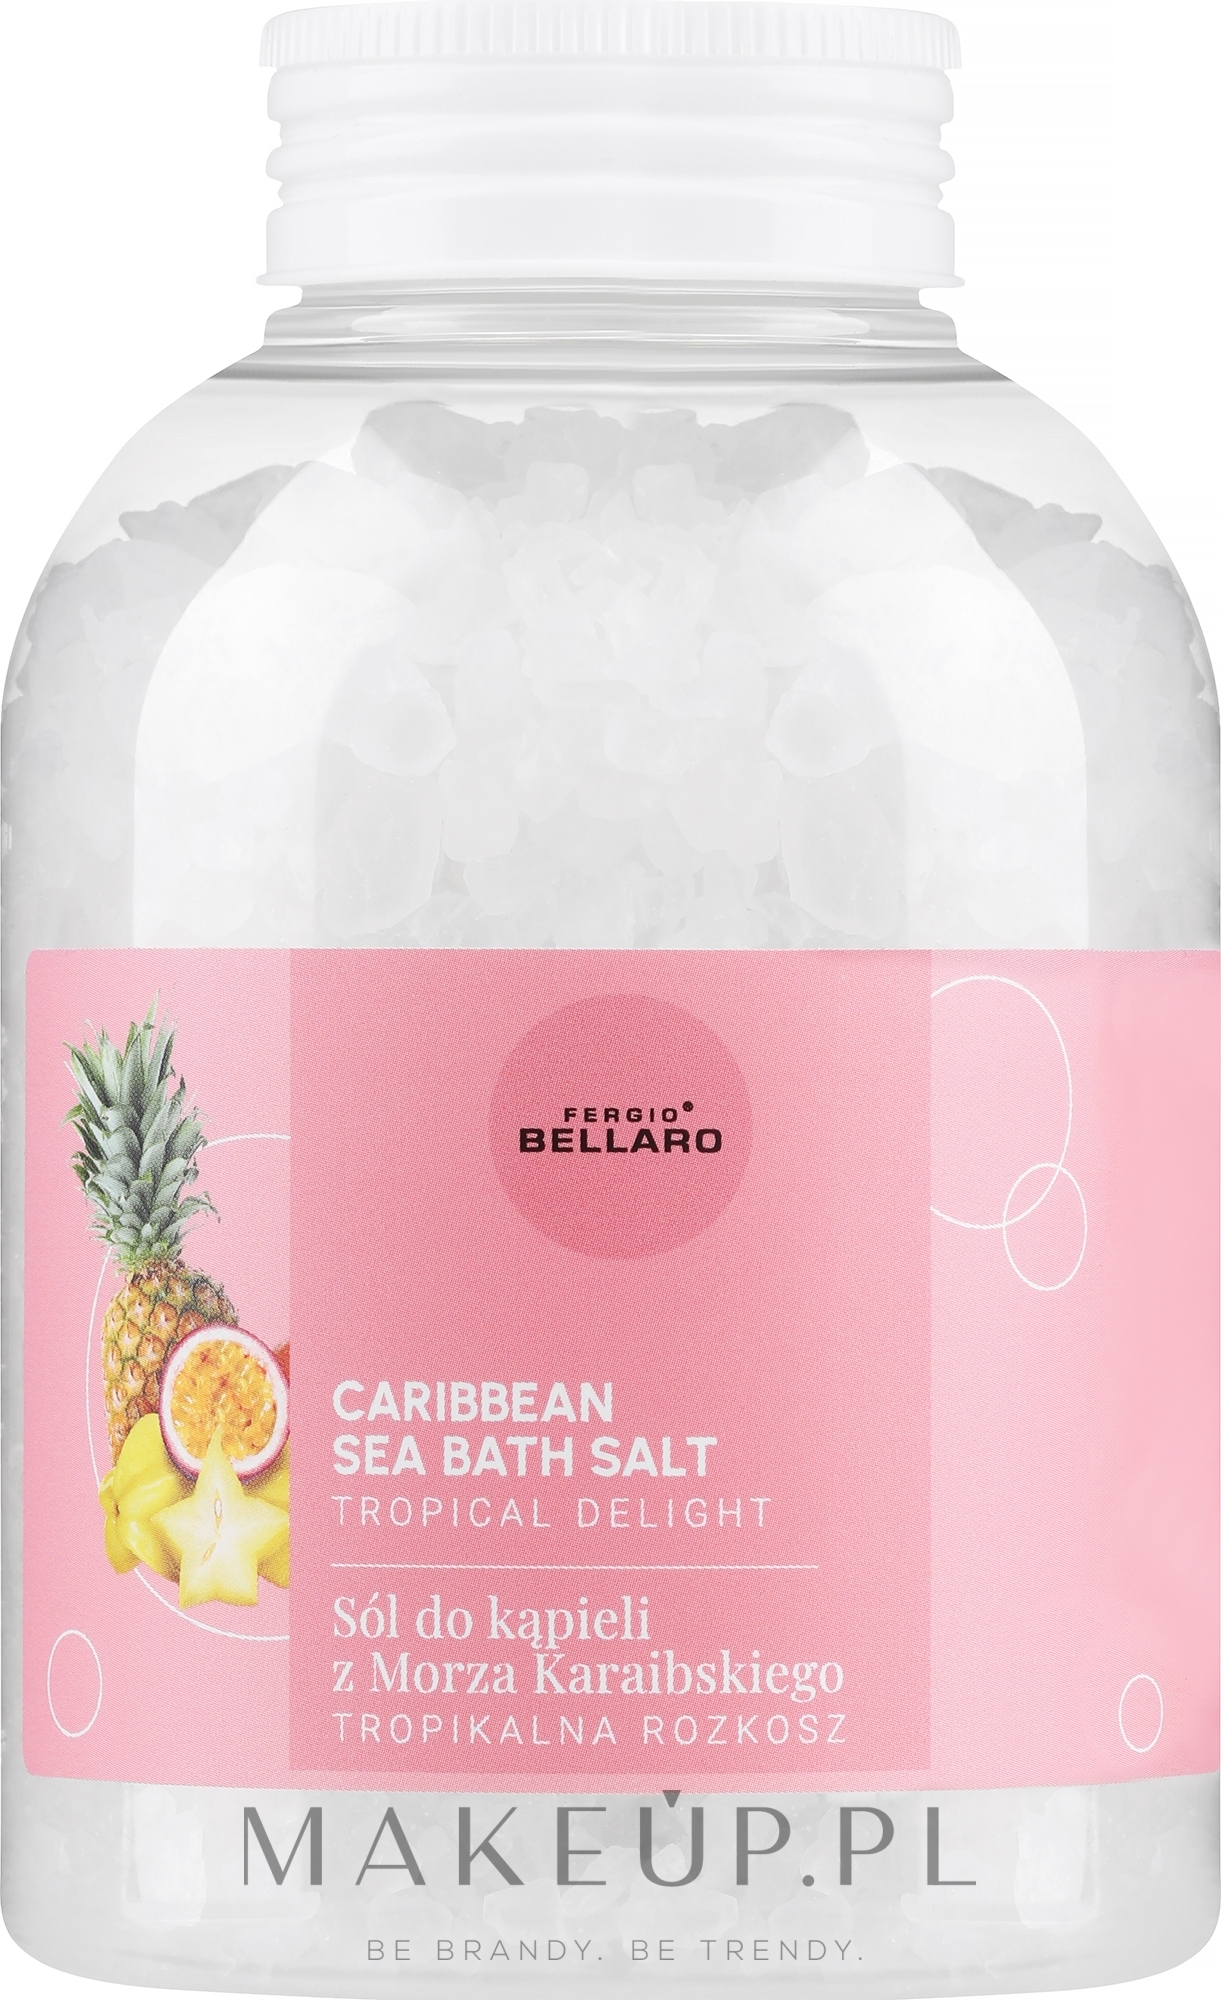 Sól do kąpieli Tropikalna rozkosz - Fergio Bellaro Caribbean Sea Bath Salt Tropical Delight — Zdjęcie 600 g